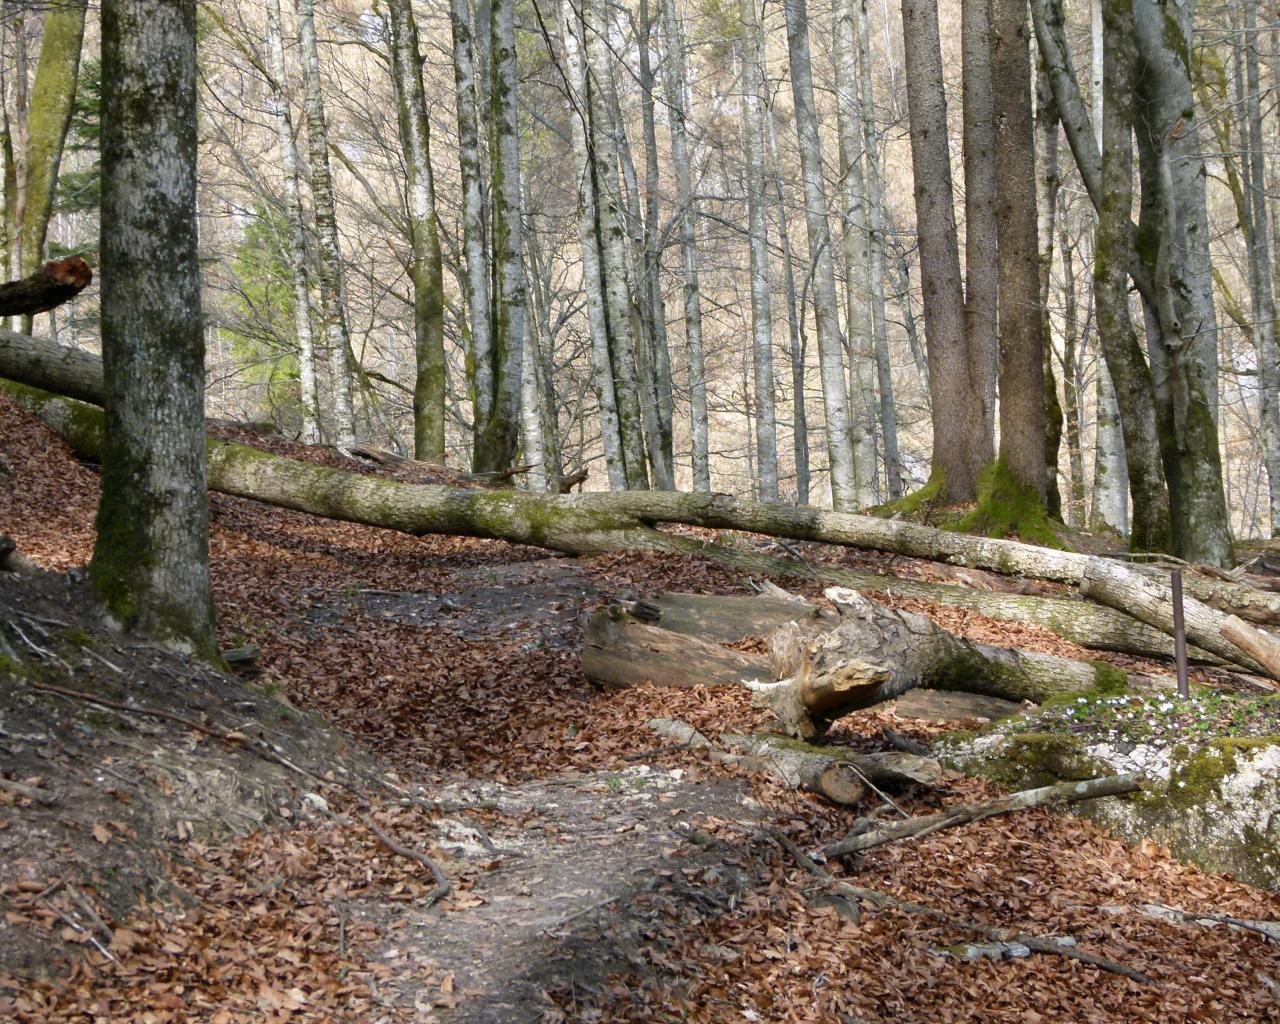 Padlé stromy leží napříč turistickou stezkou v lese